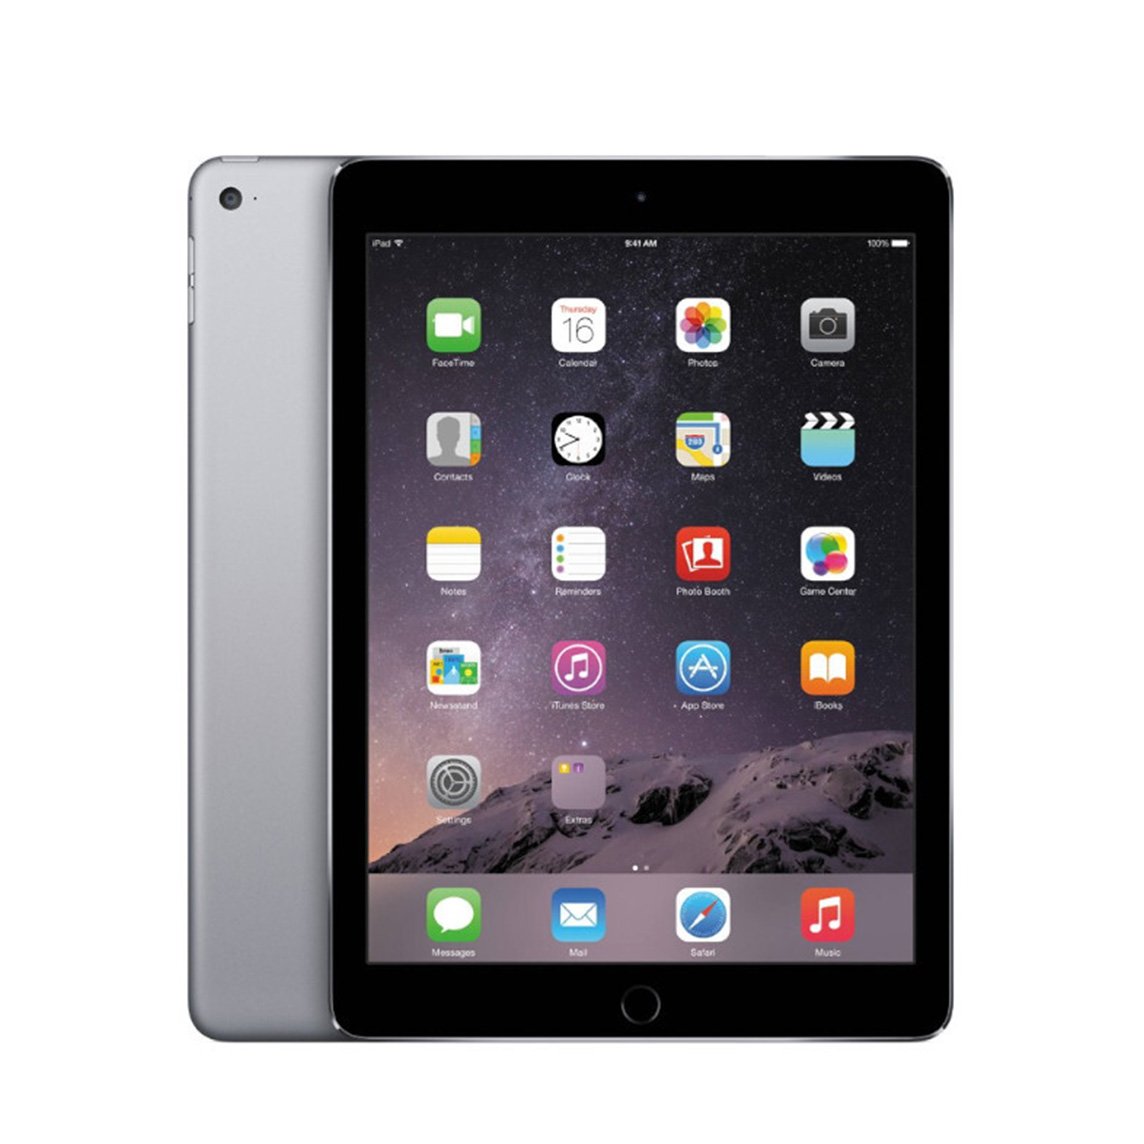 iPad Air 2 - Space Grey - Wi-Fi